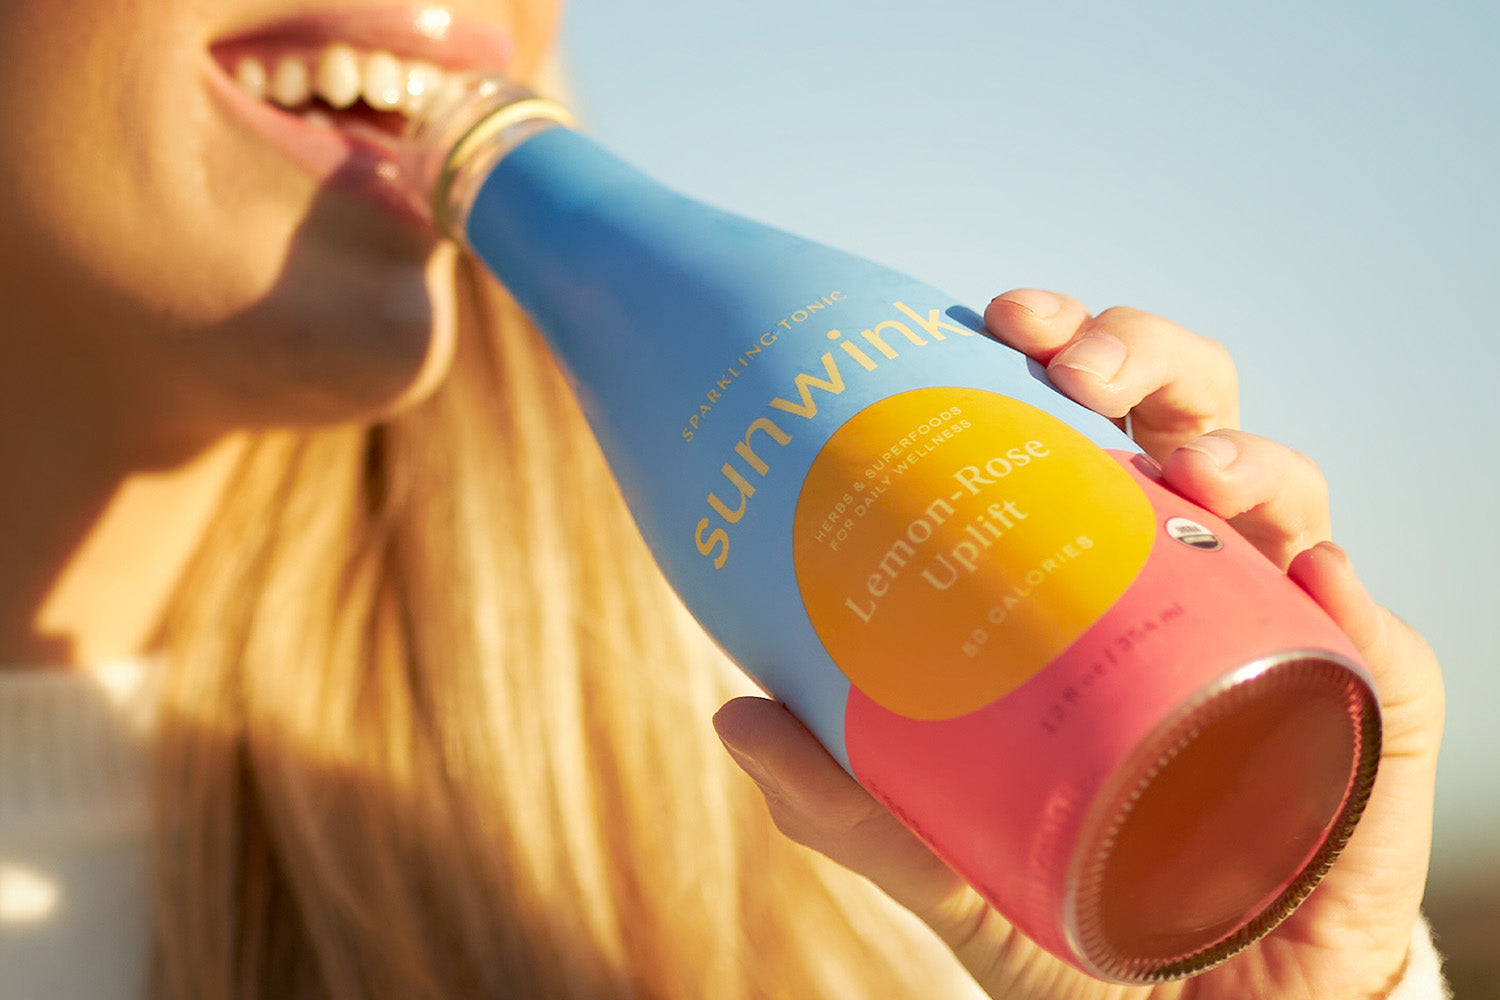 Adaptogen Drink 101: Finding the Functional Beverage for You – Sunwink